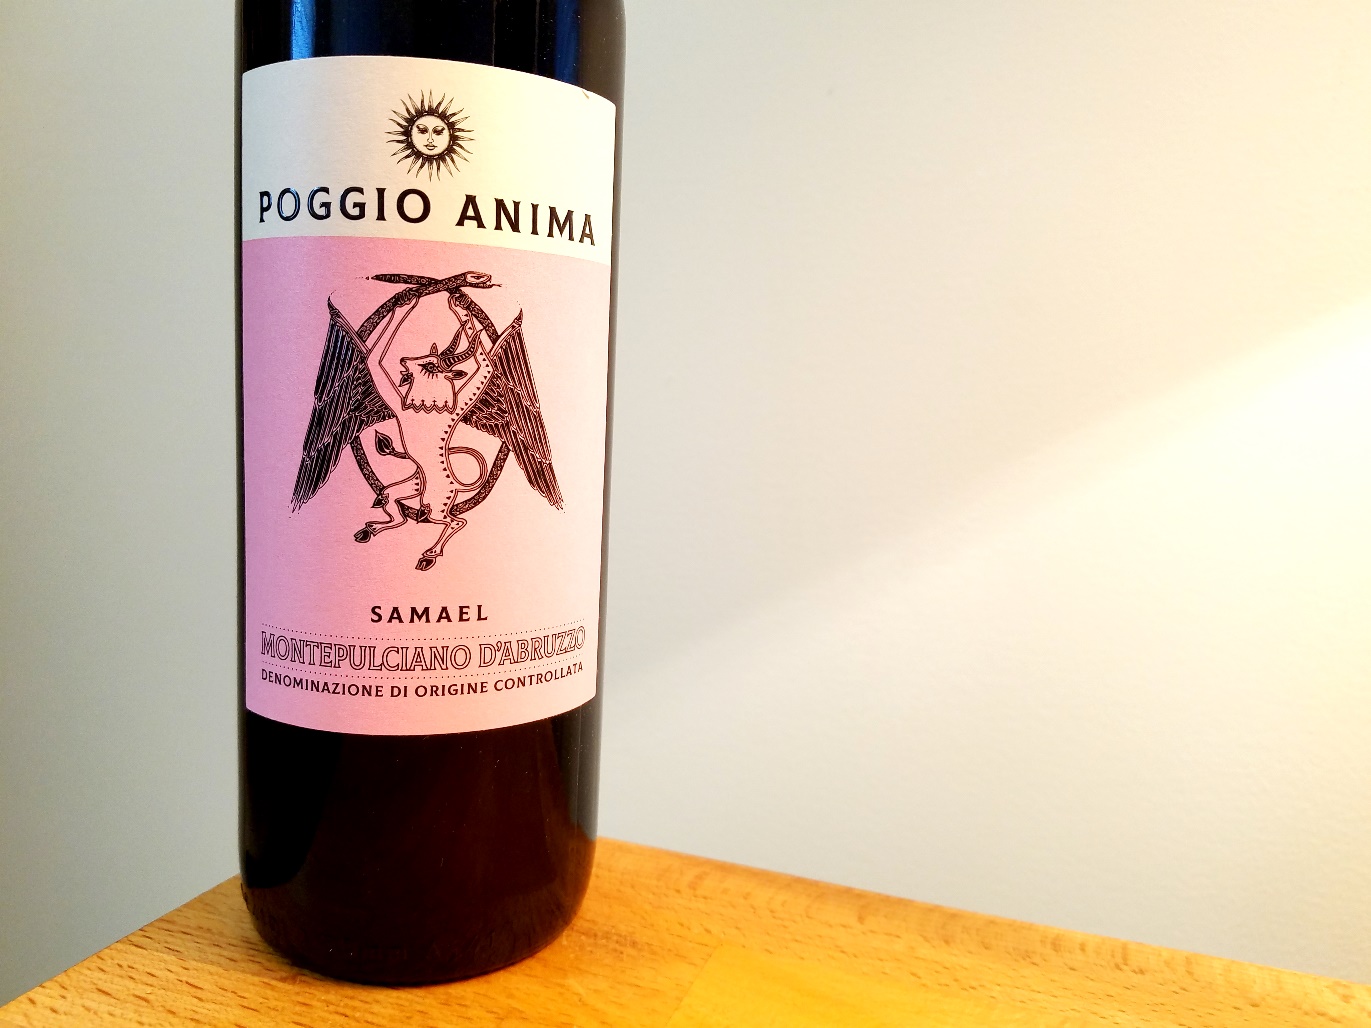 Poggio Anima Samael Montepulciano D’Abruzzo 2019, Italy, Wine Casual